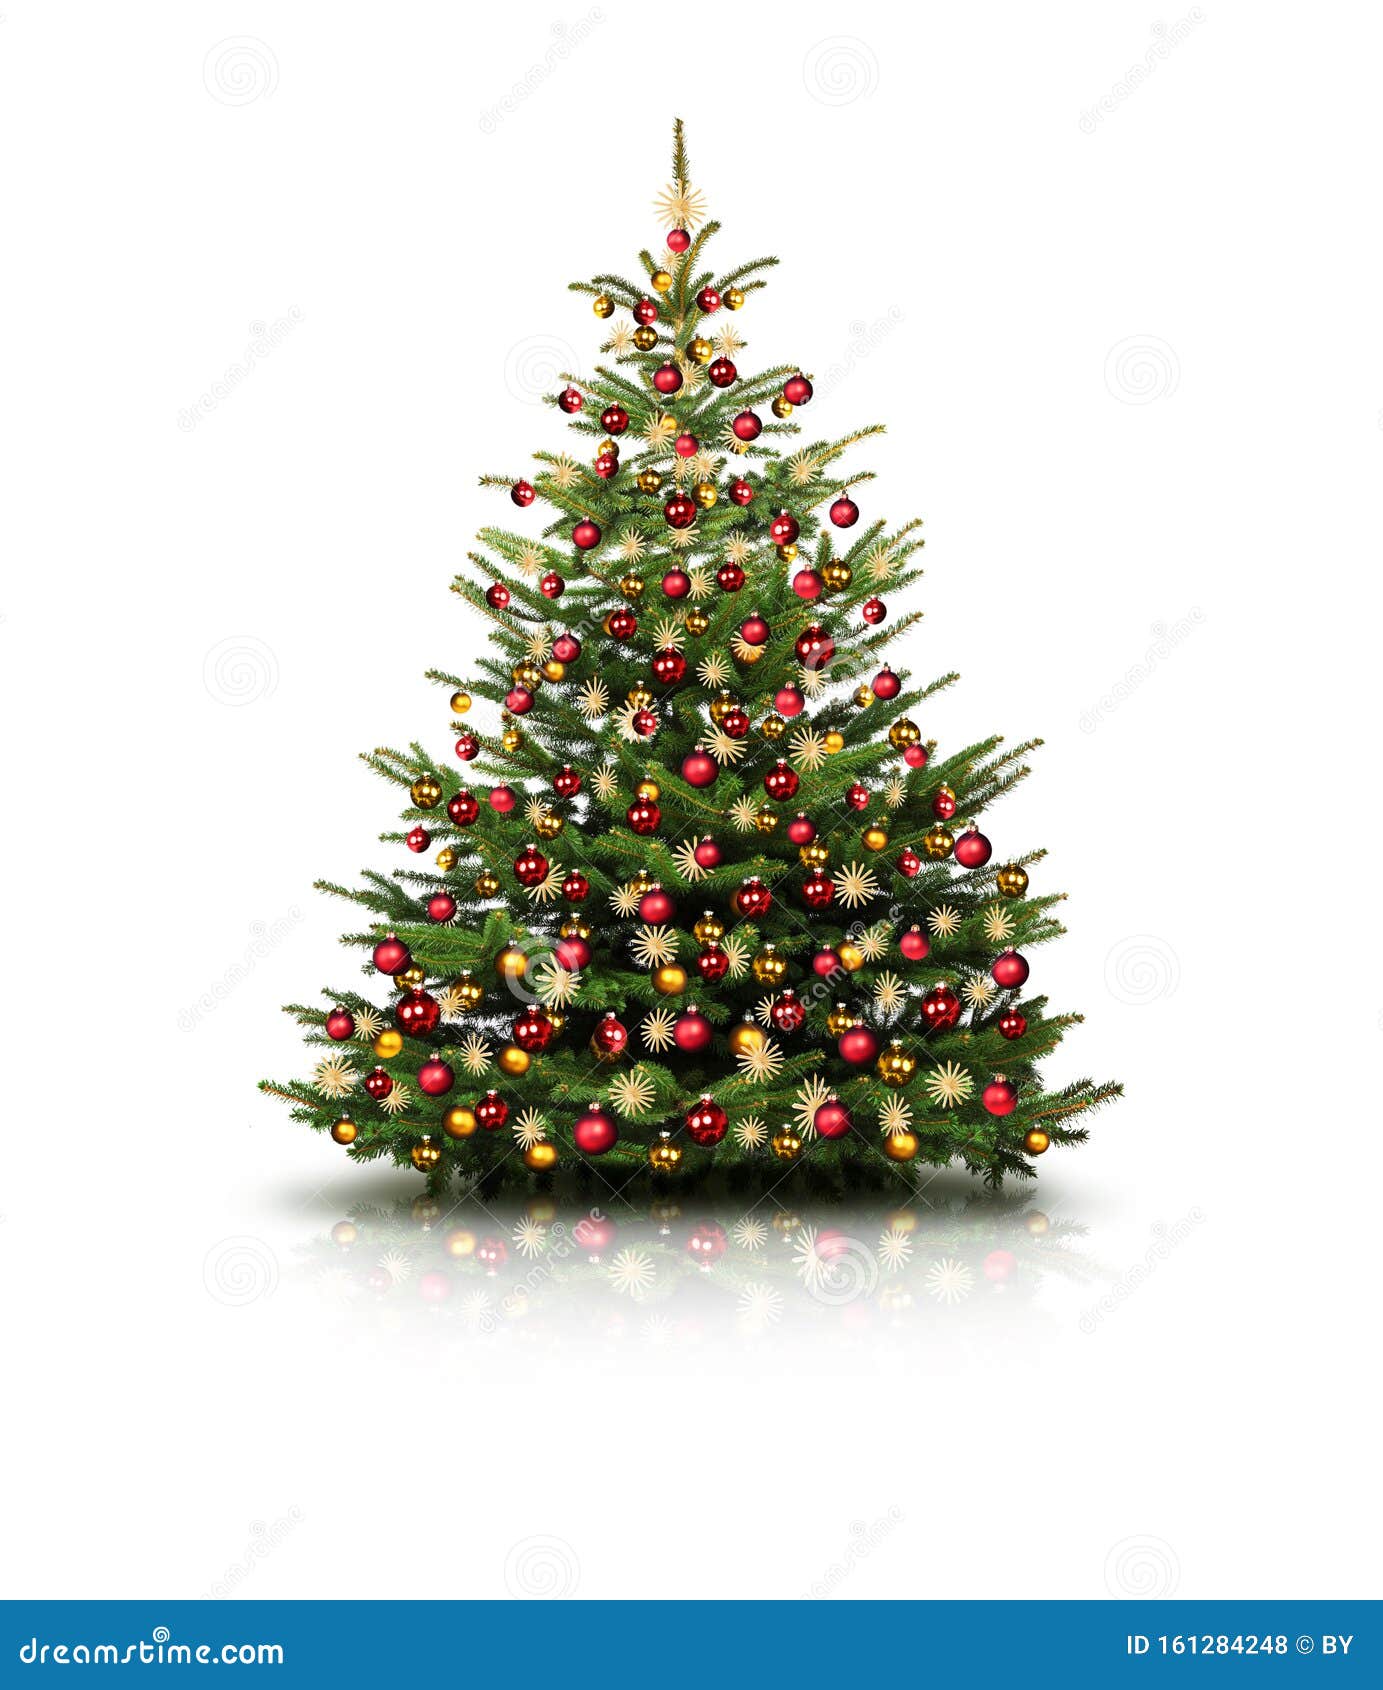 geschmÃÂ¼ckter weihnachtsbaum mit bunten weihnachtskugeln isoliert auf weiÃÅ¸em hintergrund